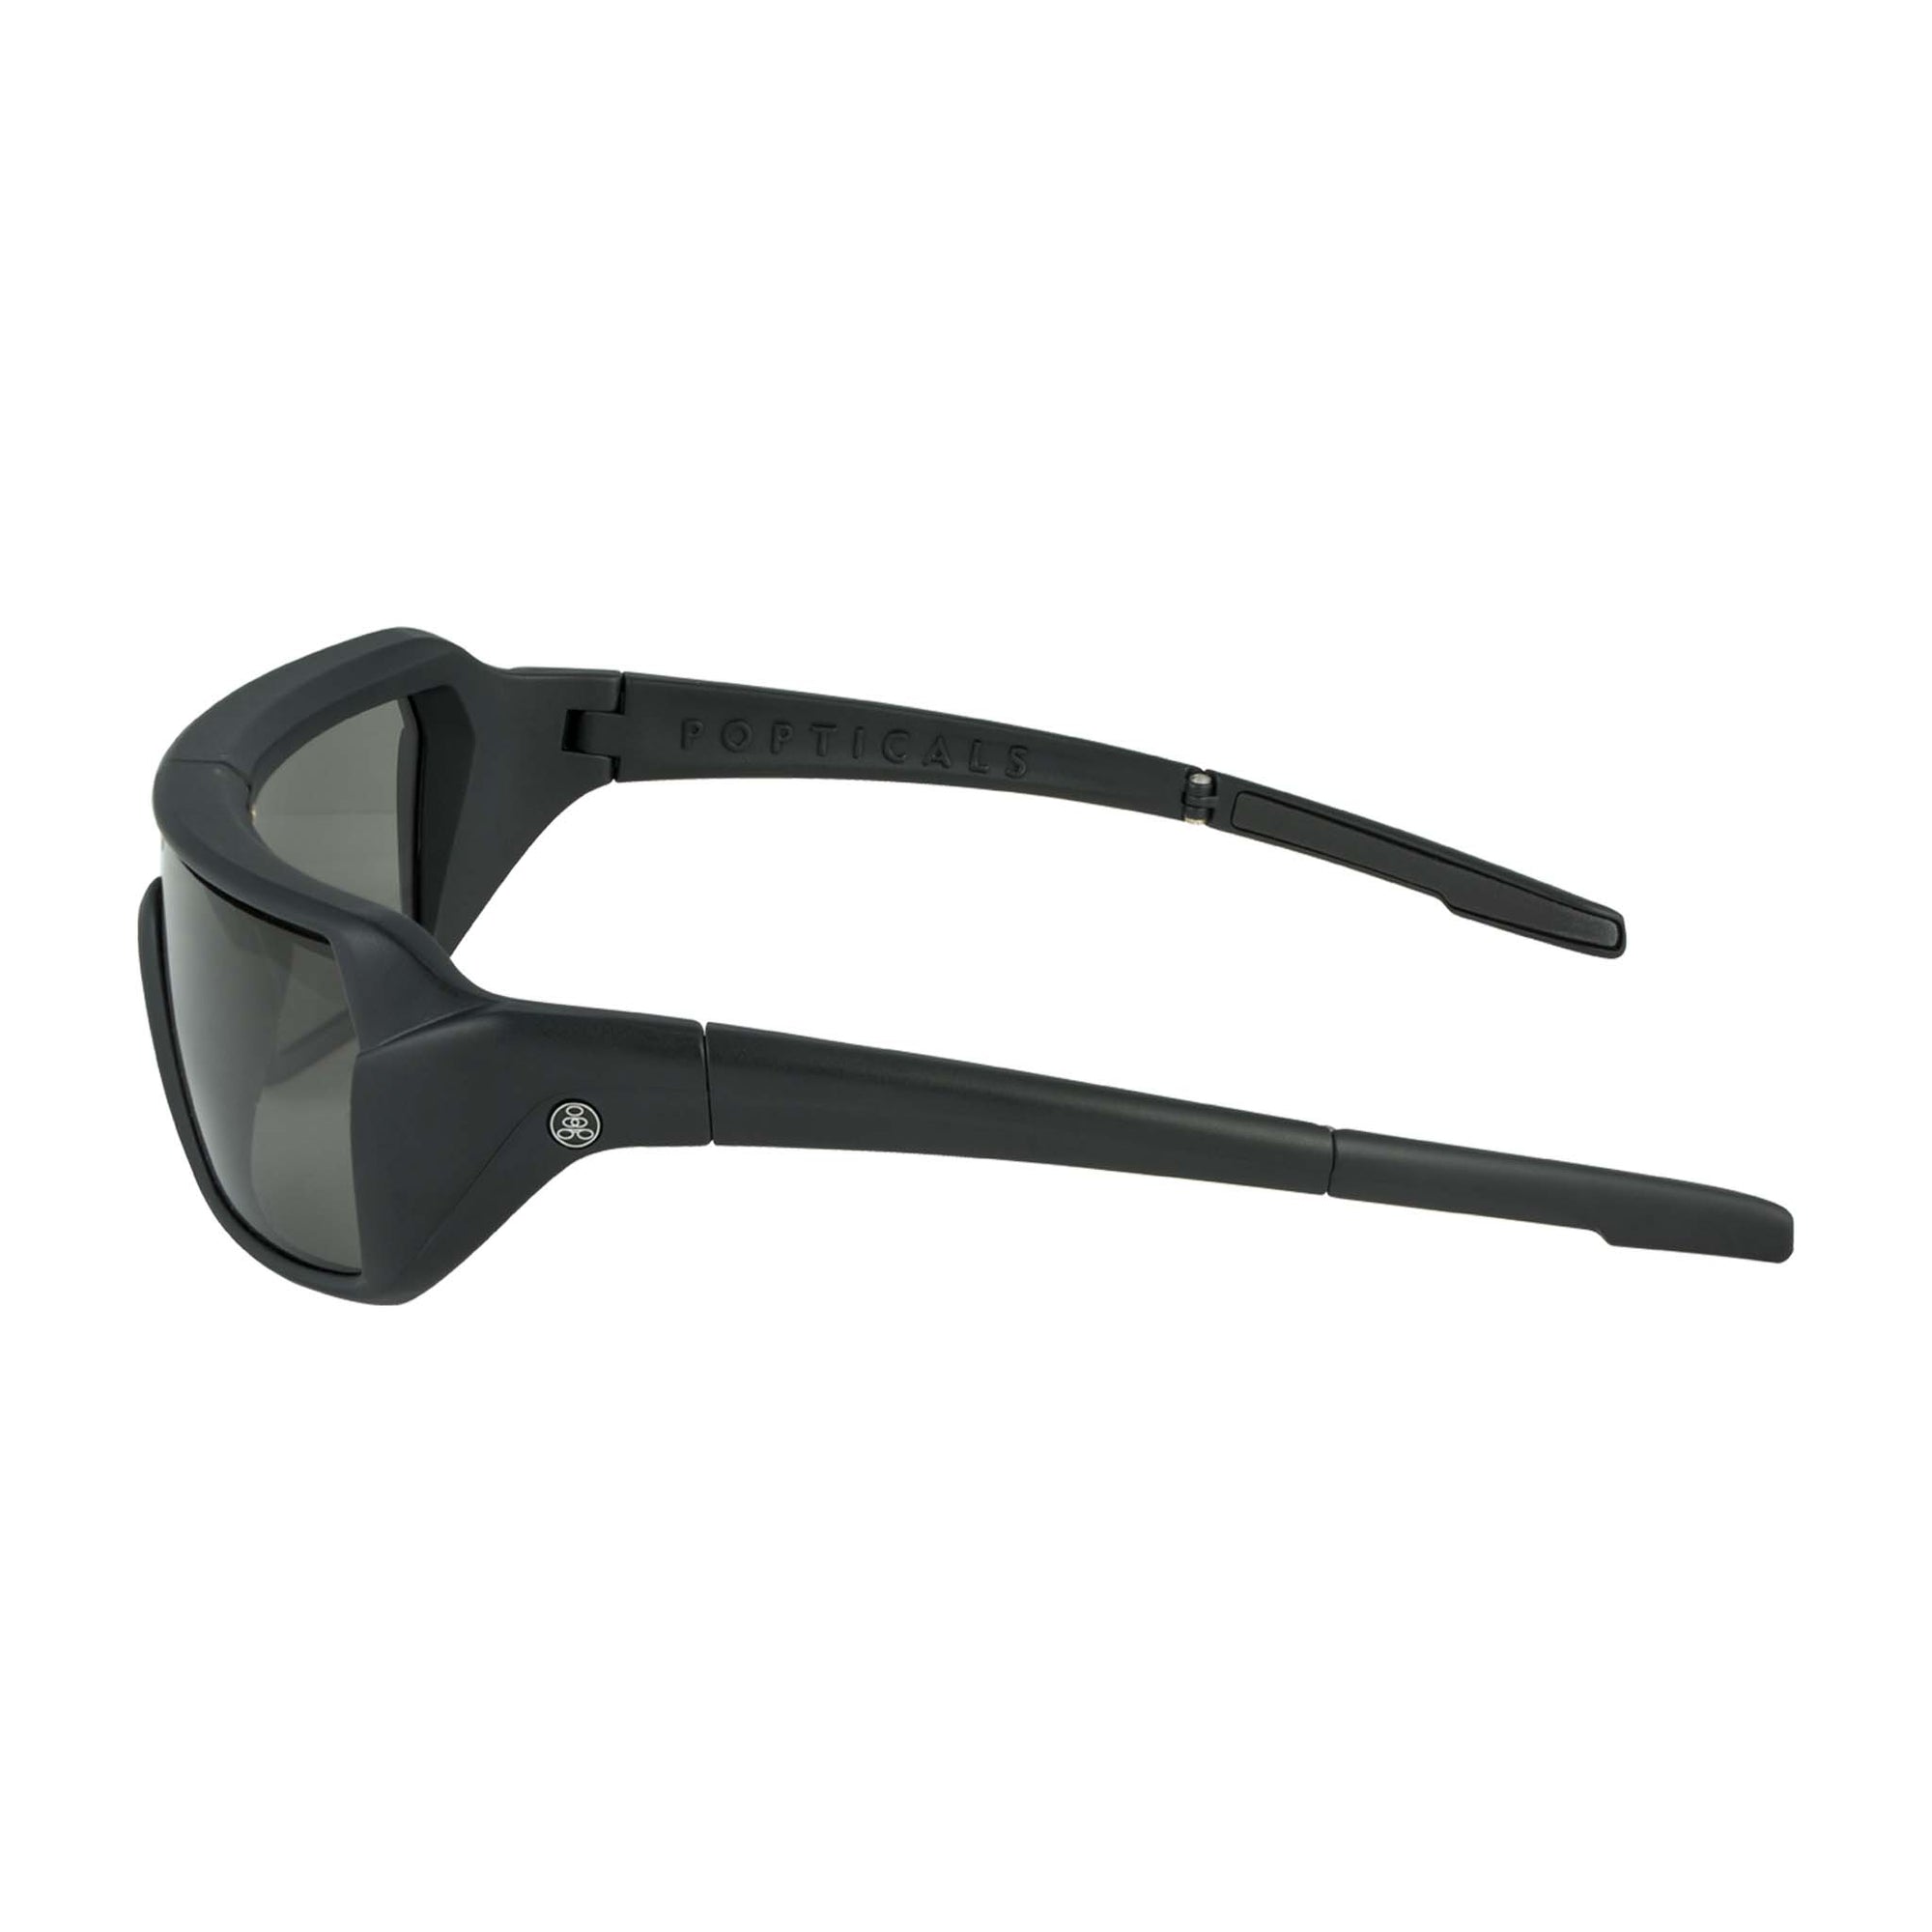 Popticals, Premium Compact Sunglasses, PopStorm, 010060-BMGP, Polarized Sunglasses, Matte Black Frame, Gray Lenses, Side View